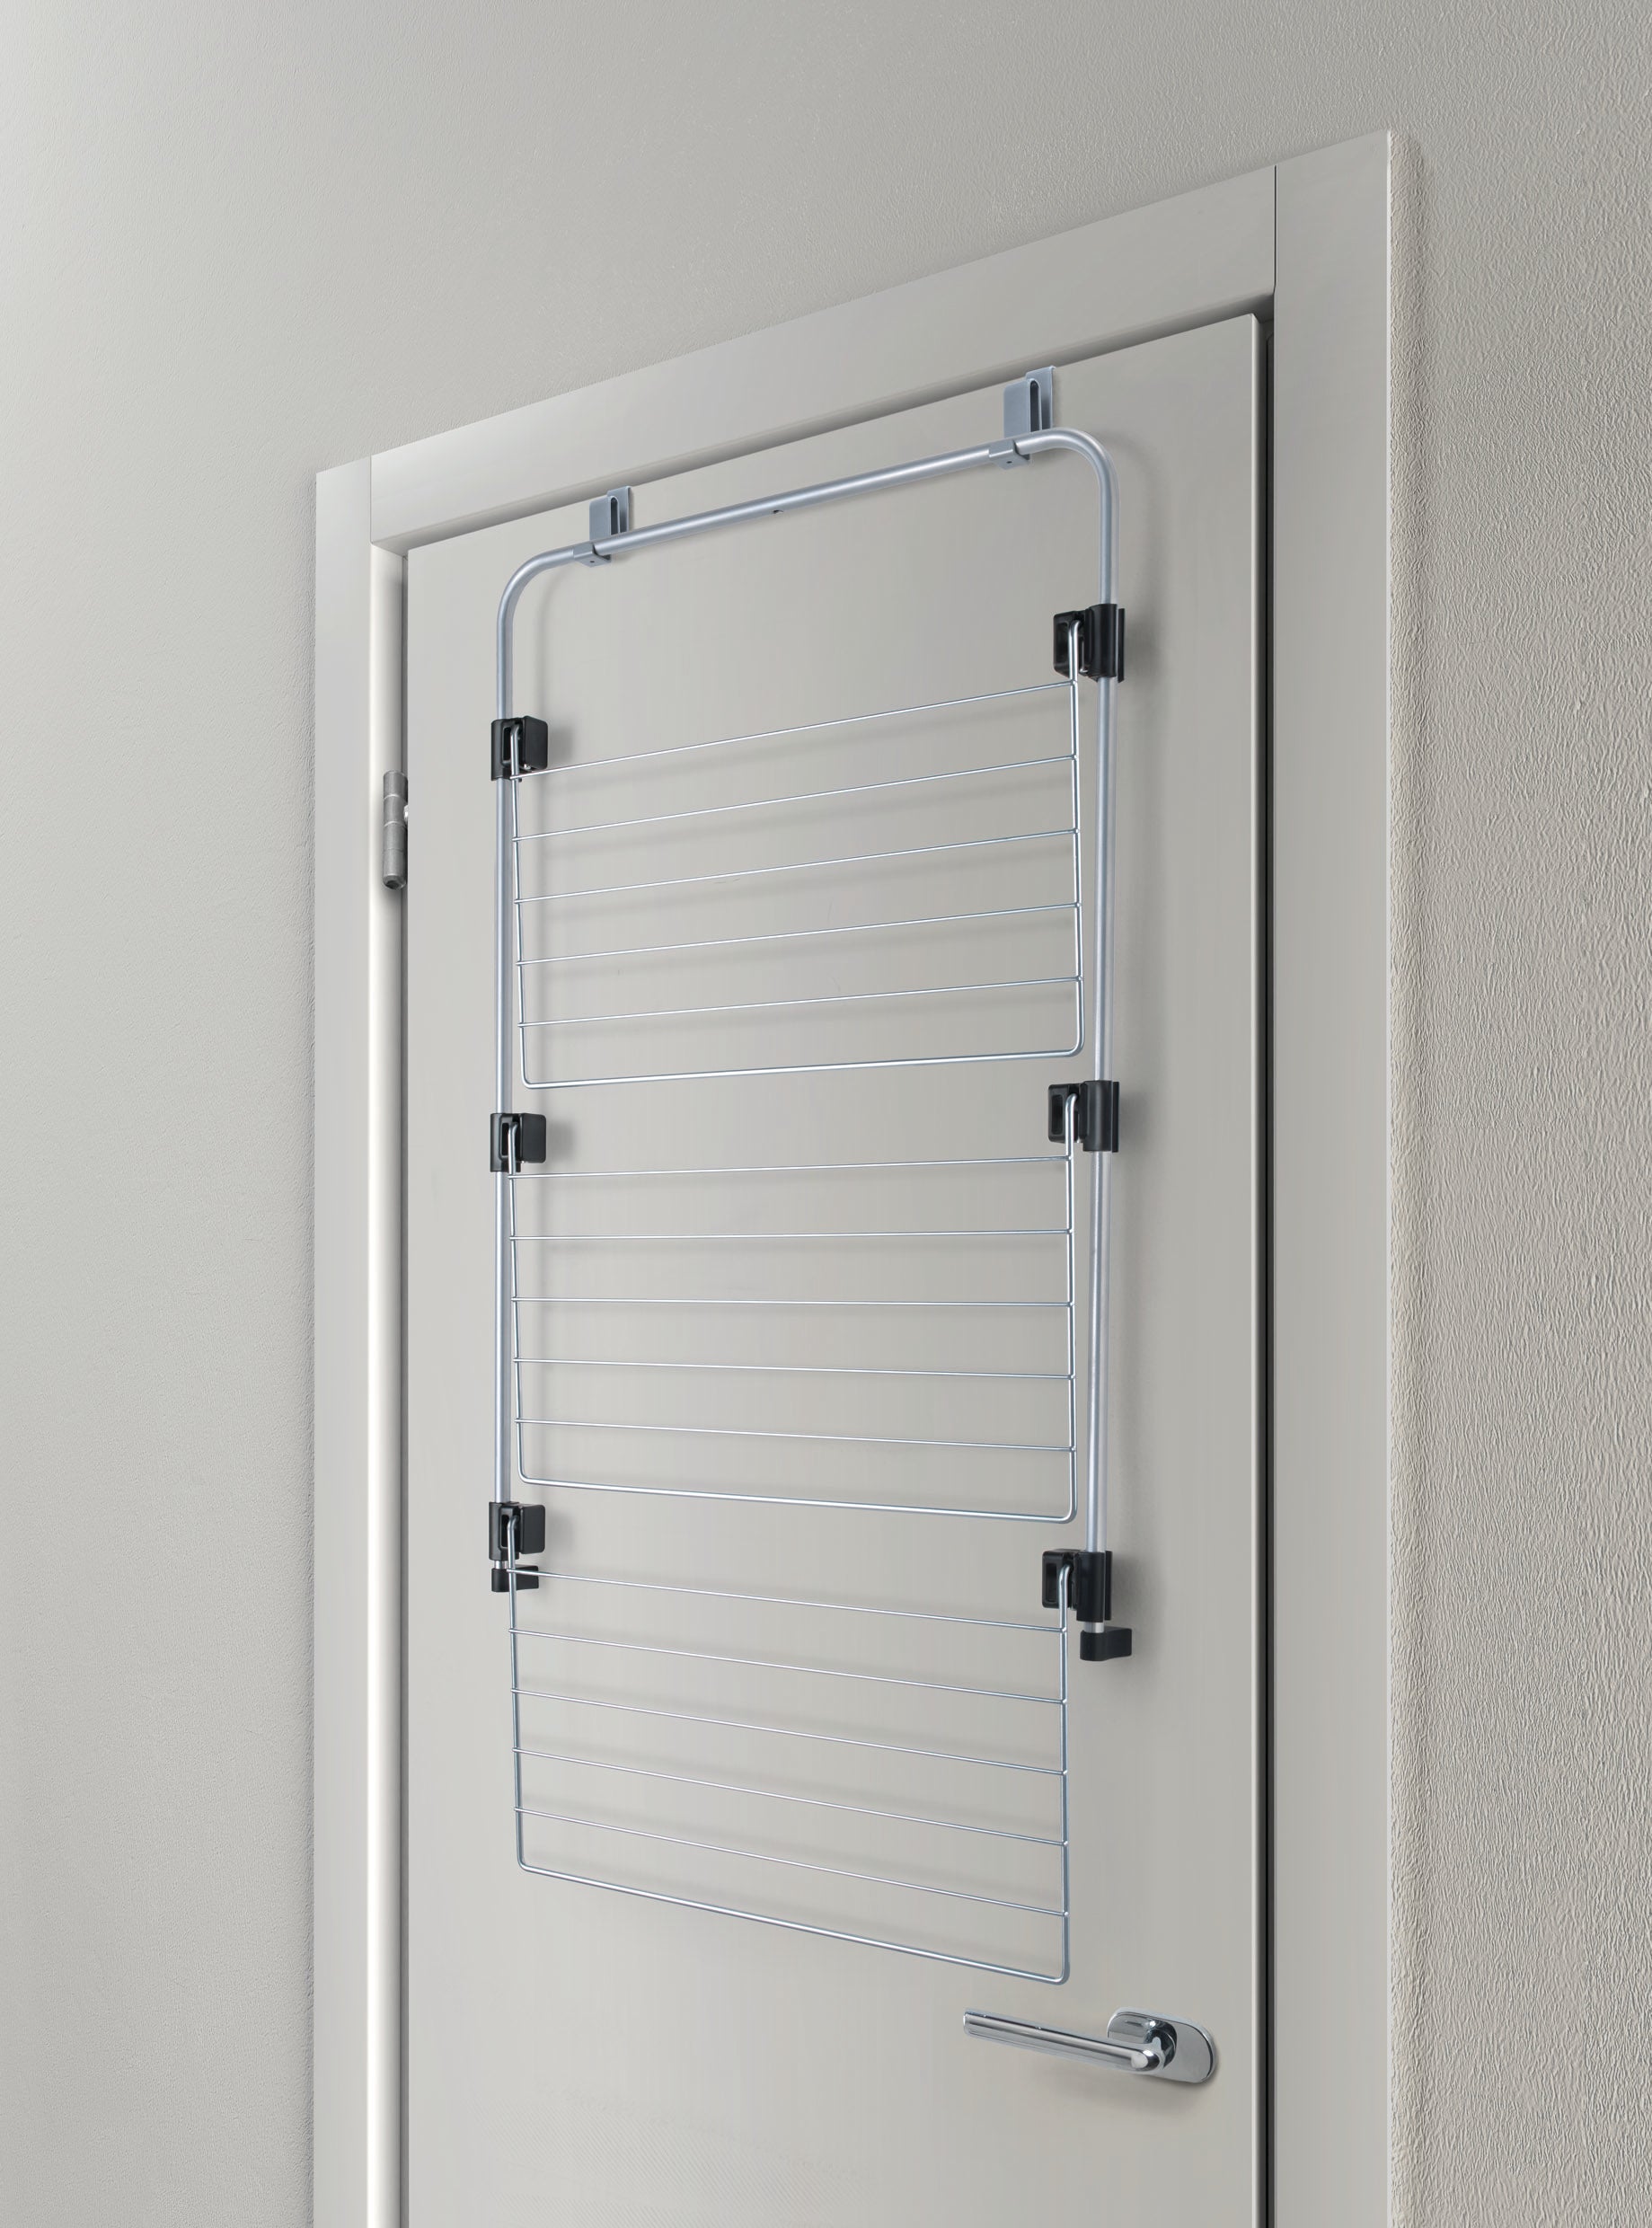 Metaltex Epotherm Coating Over The Door / Shower Laundry Drier, 57X31X93 Cm